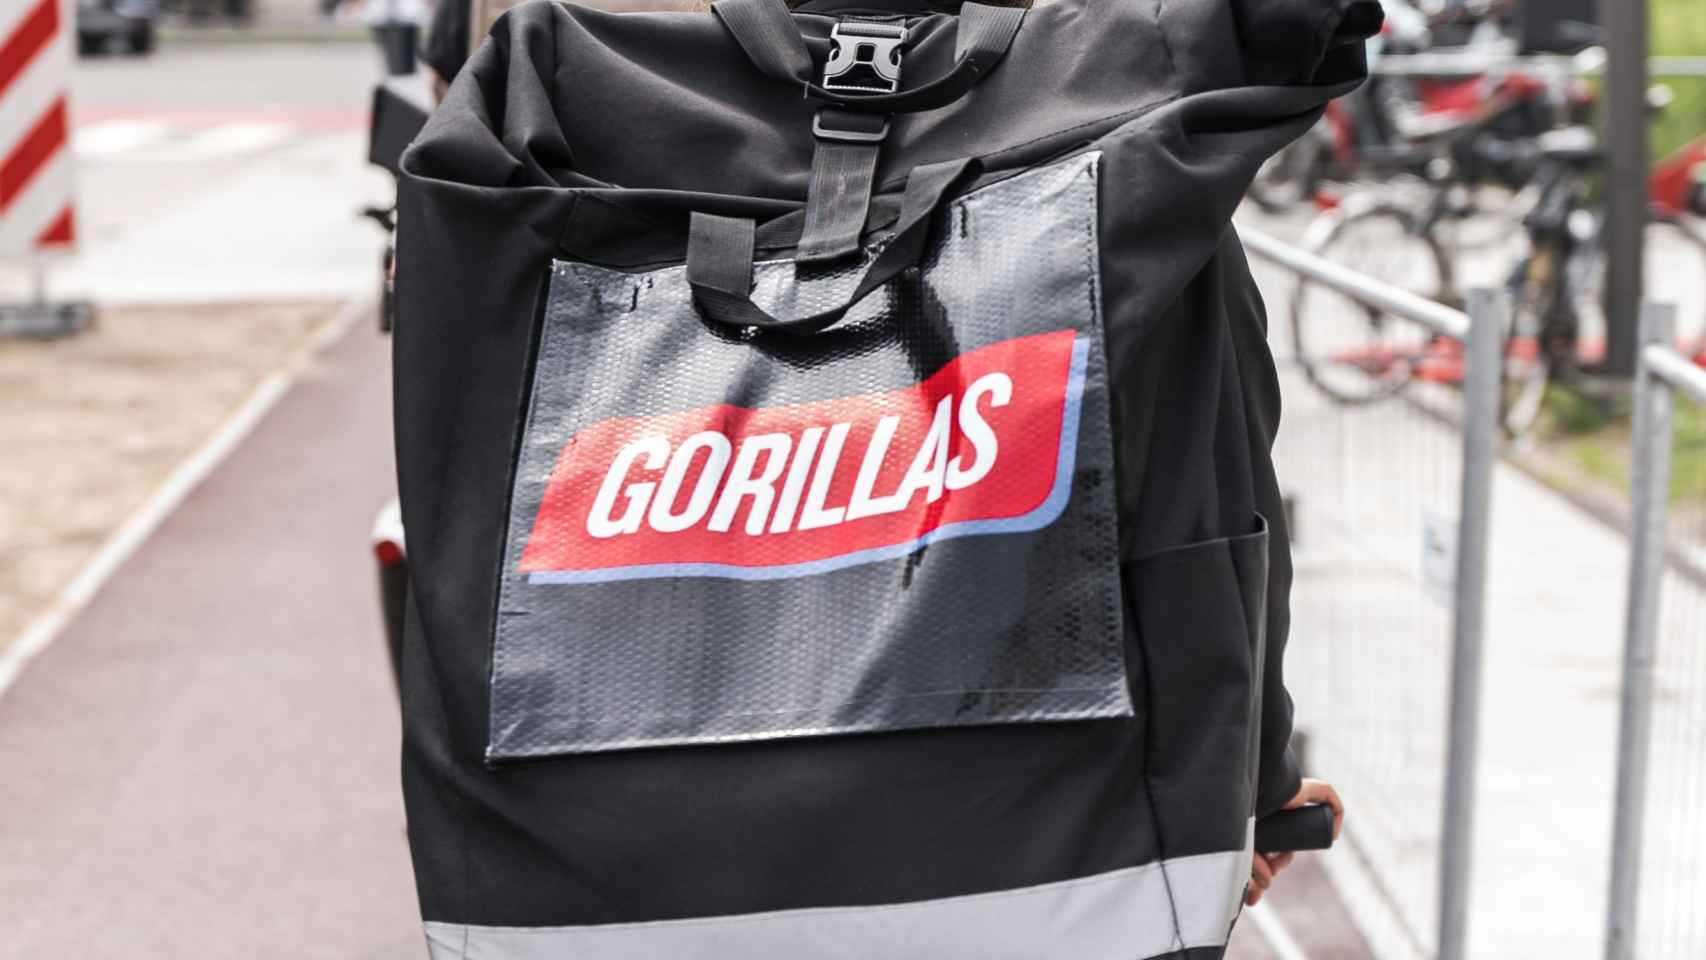 Rider de Gorillas con la mochila de reparto / CEDIDA